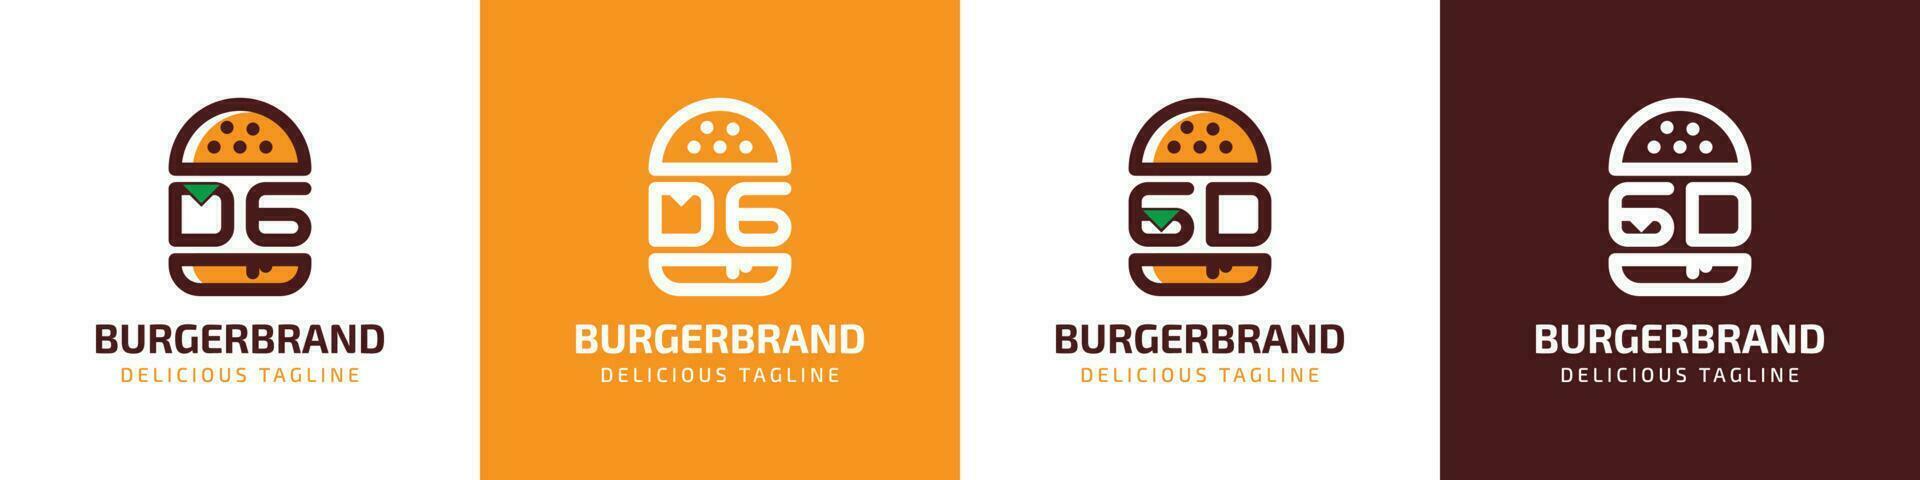 carta dg e gd hamburguer logotipo, adequado para qualquer o negócio relacionado para hamburguer com dg ou gd iniciais. vetor